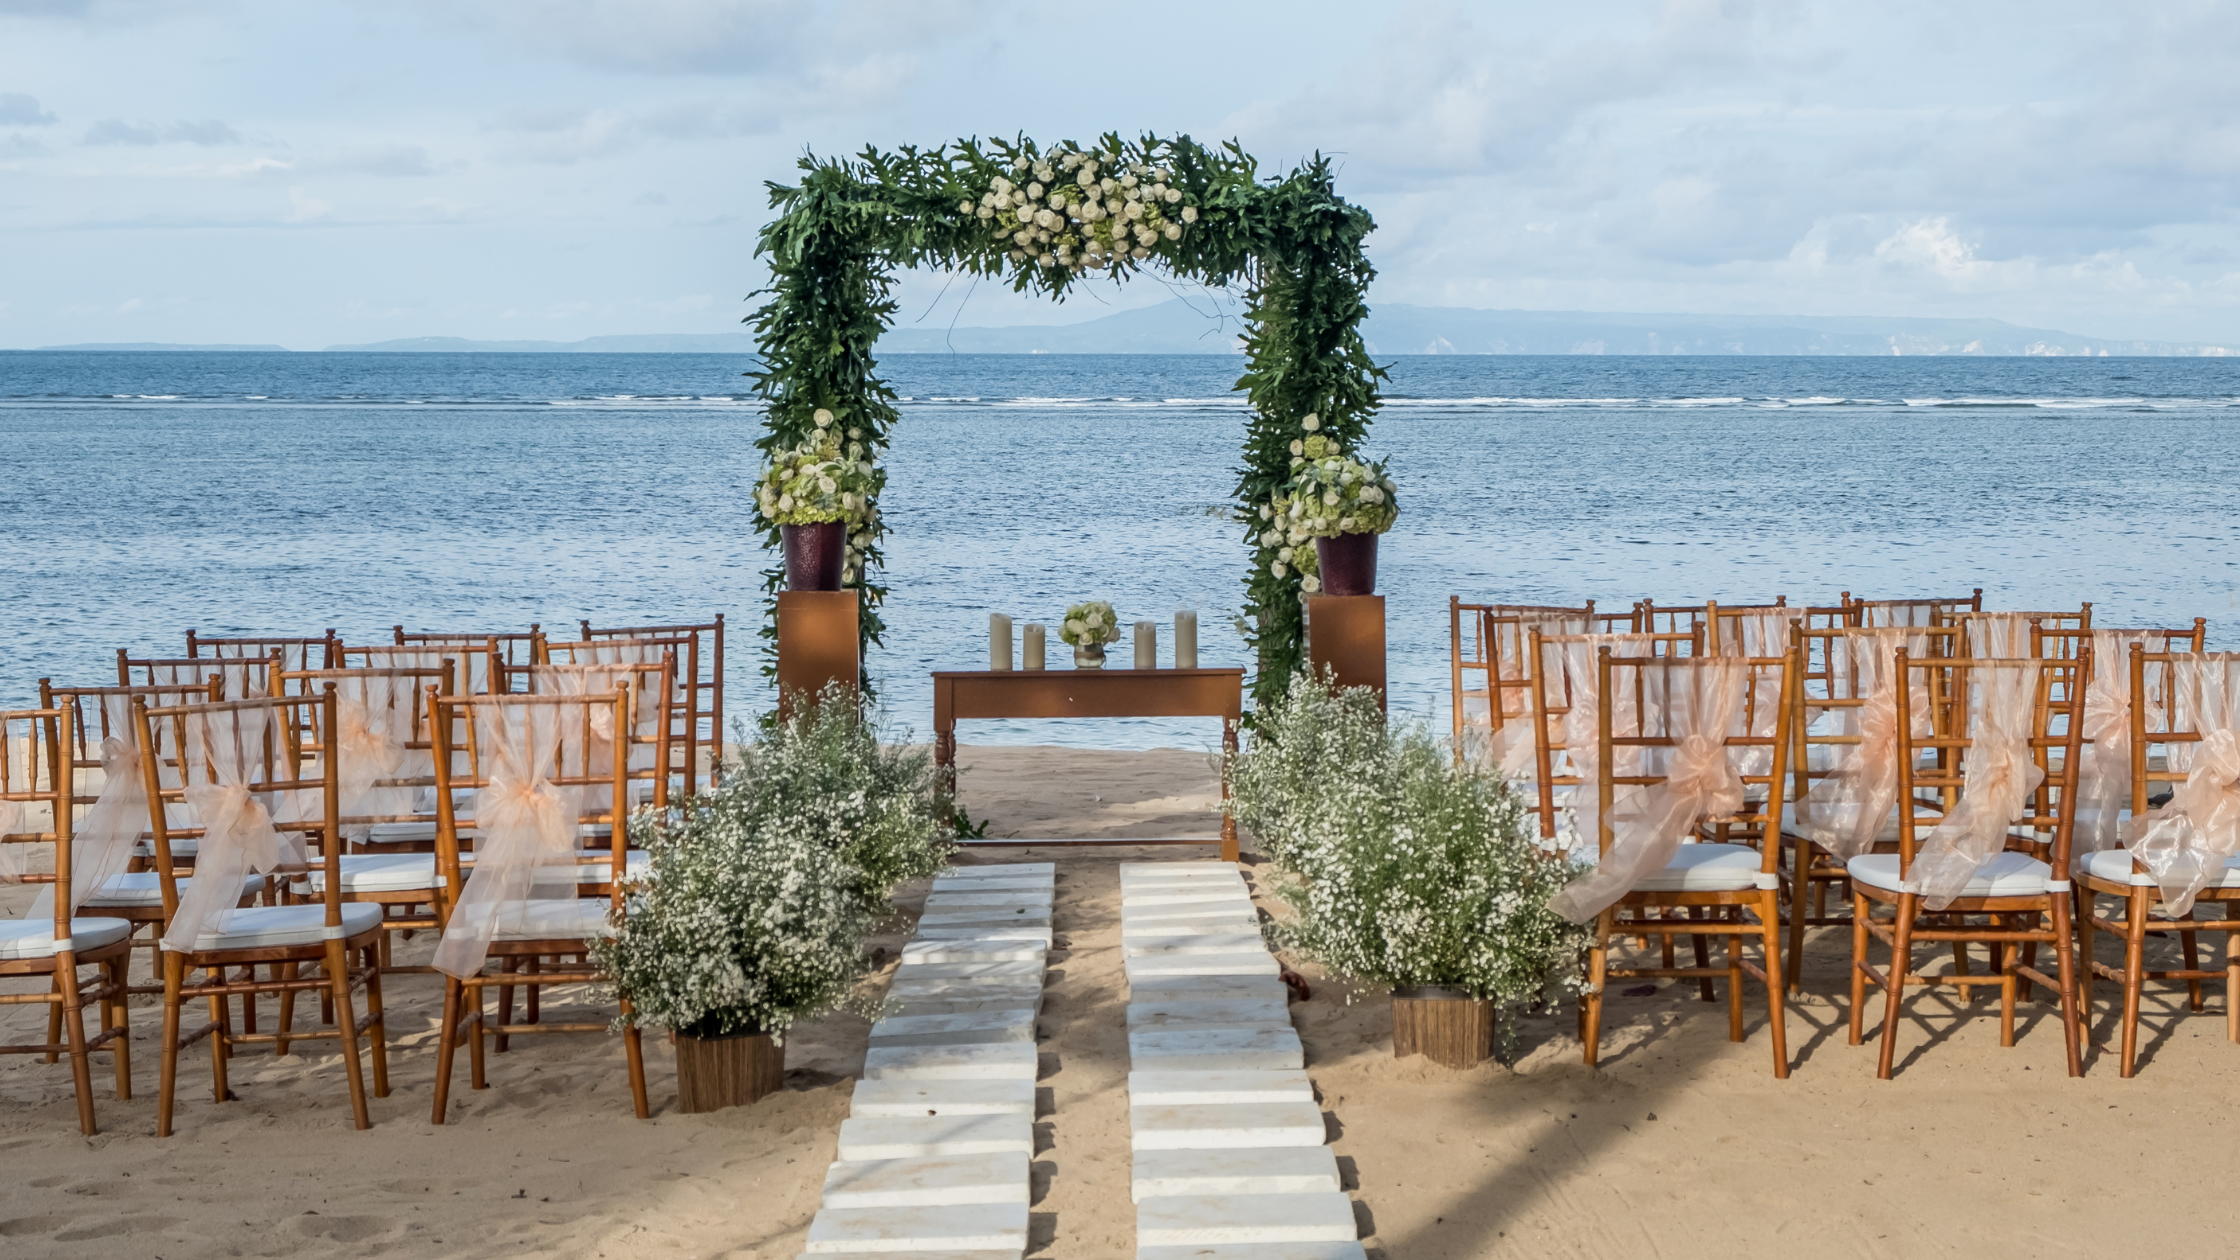 Stunning Underwater Wedding Photography Inspiration - Destination